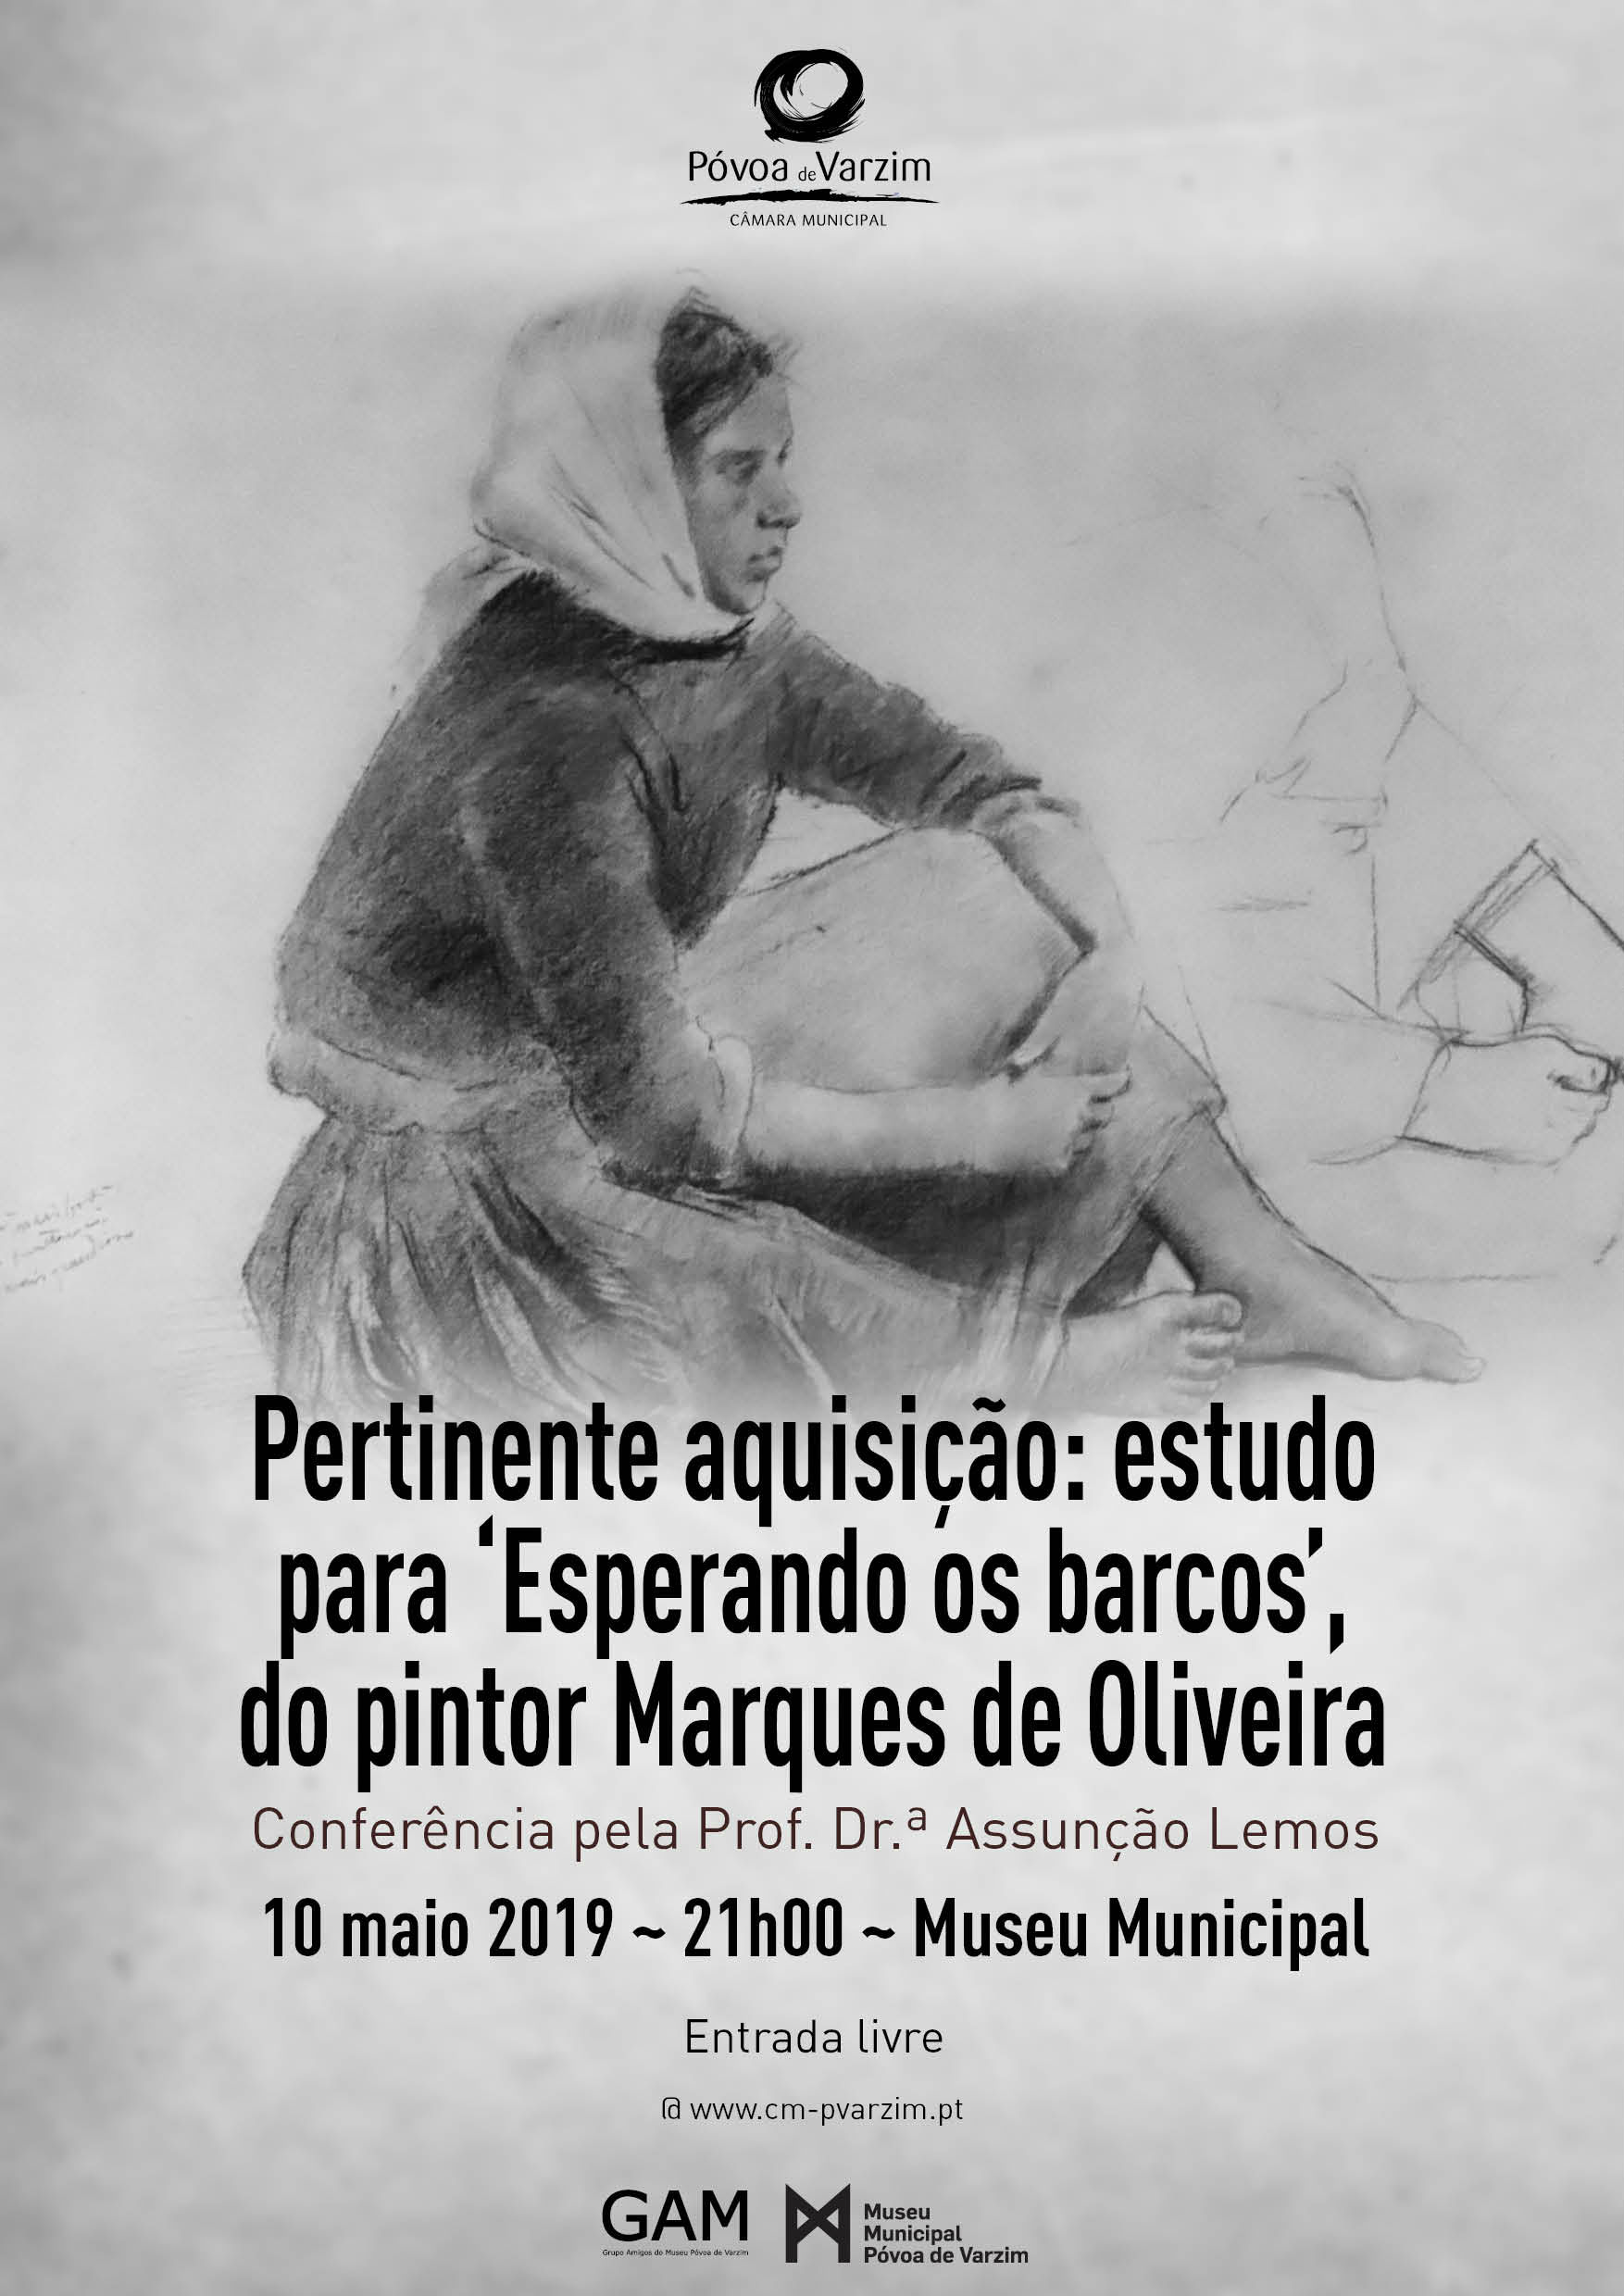 Conferência sobre "A pertinente aquisição: estudo esperando os barcos do pintor Marques De Oliveira"